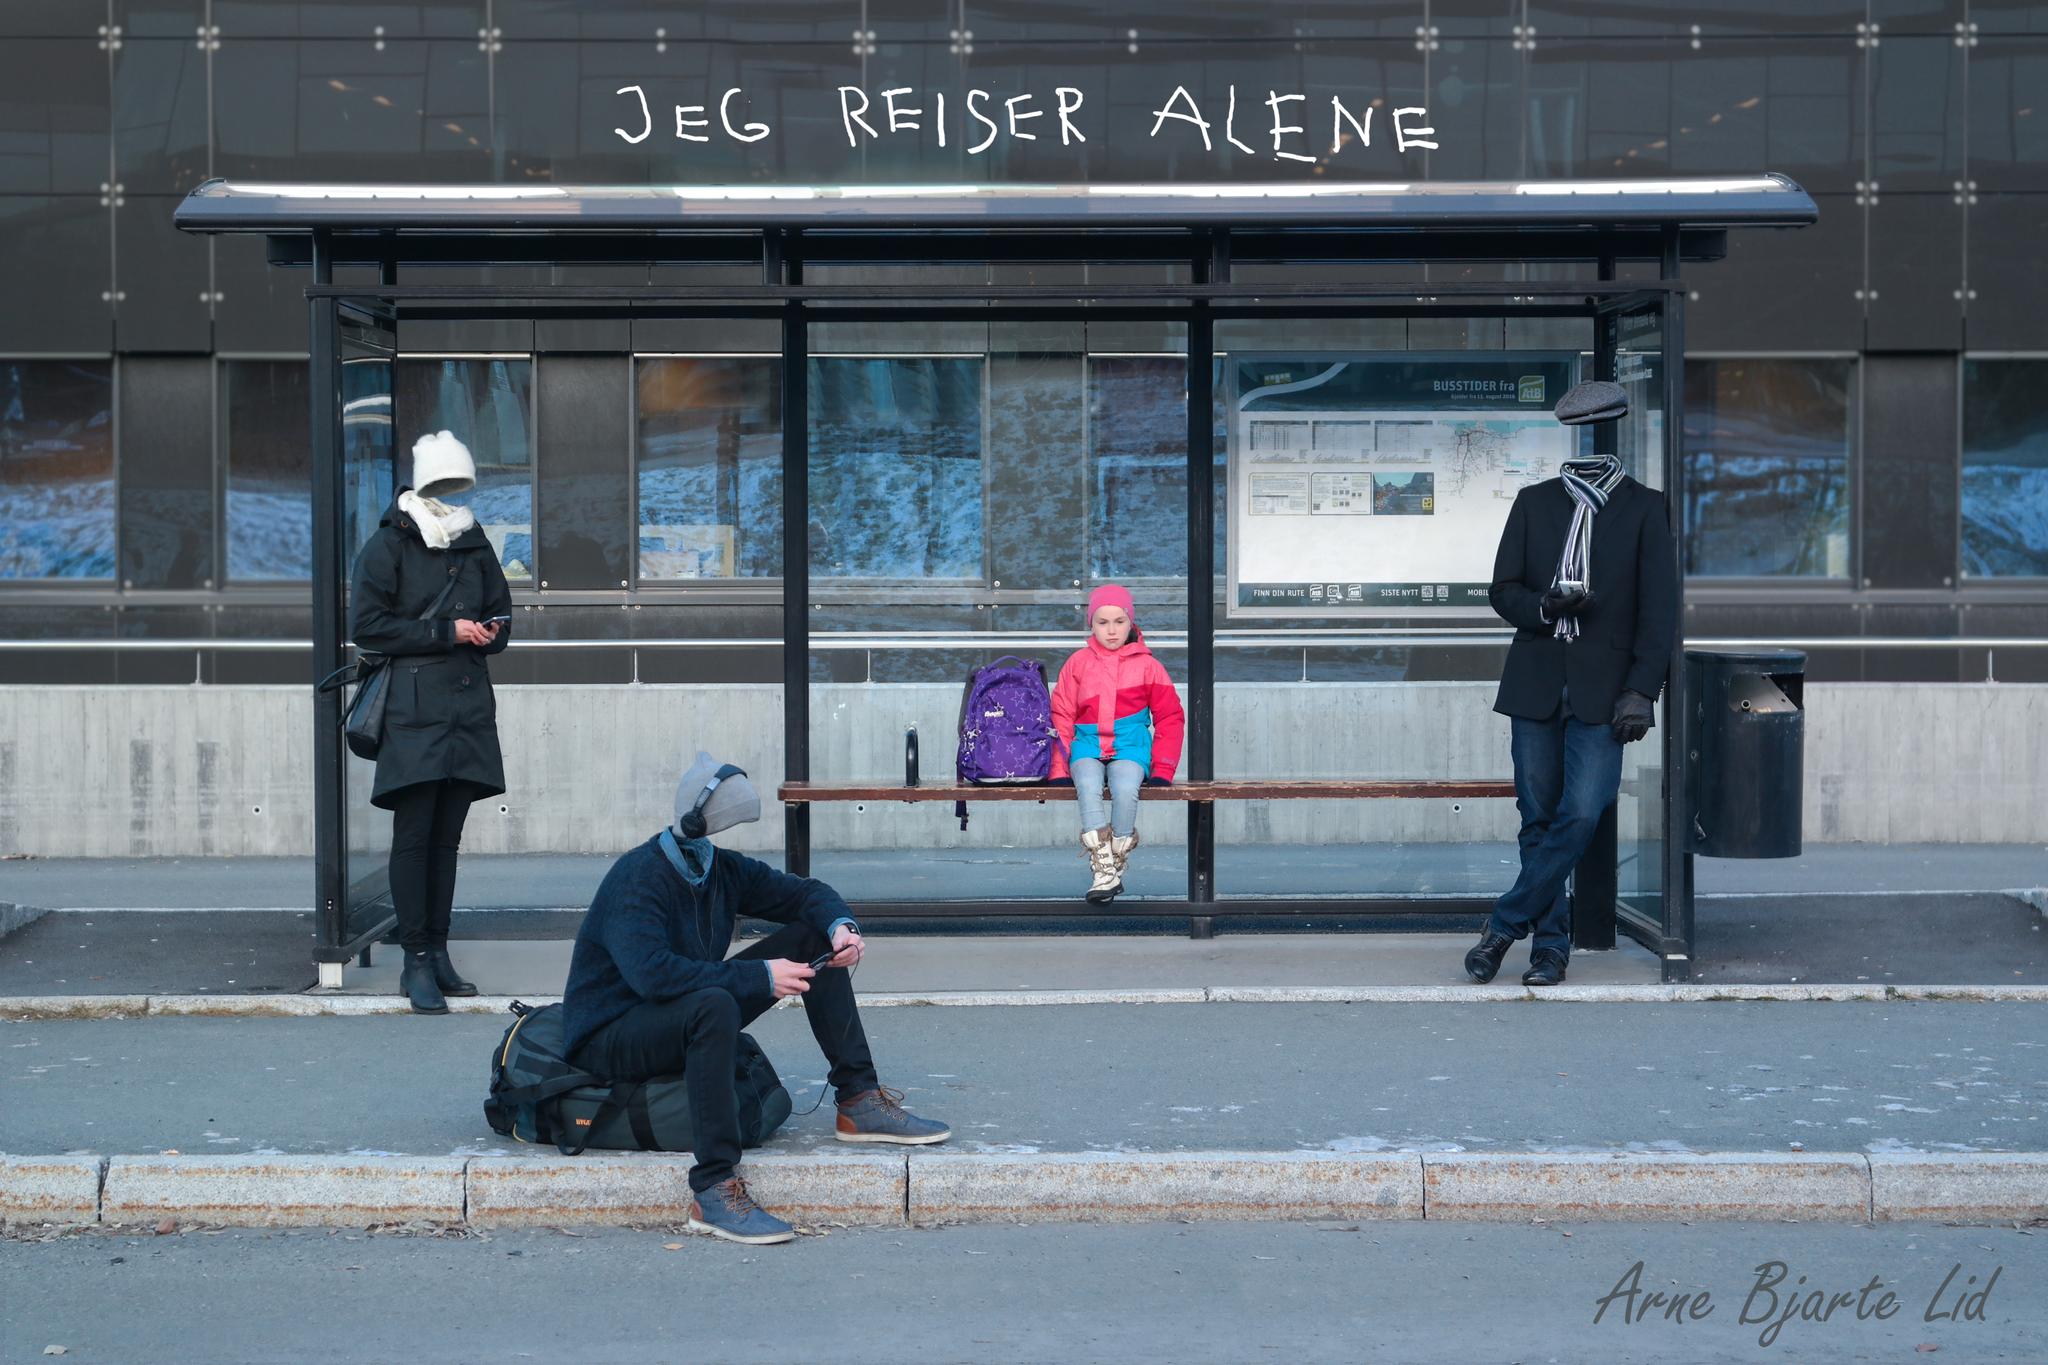 Vi glemmer at de rundt oss er mennesker akkurat som oss: Den lille jenta som sitter alene i busskuret og ensom venter sammen med mennesker som ikke er til stedet, skriver Arne Bjarte Lid (20).